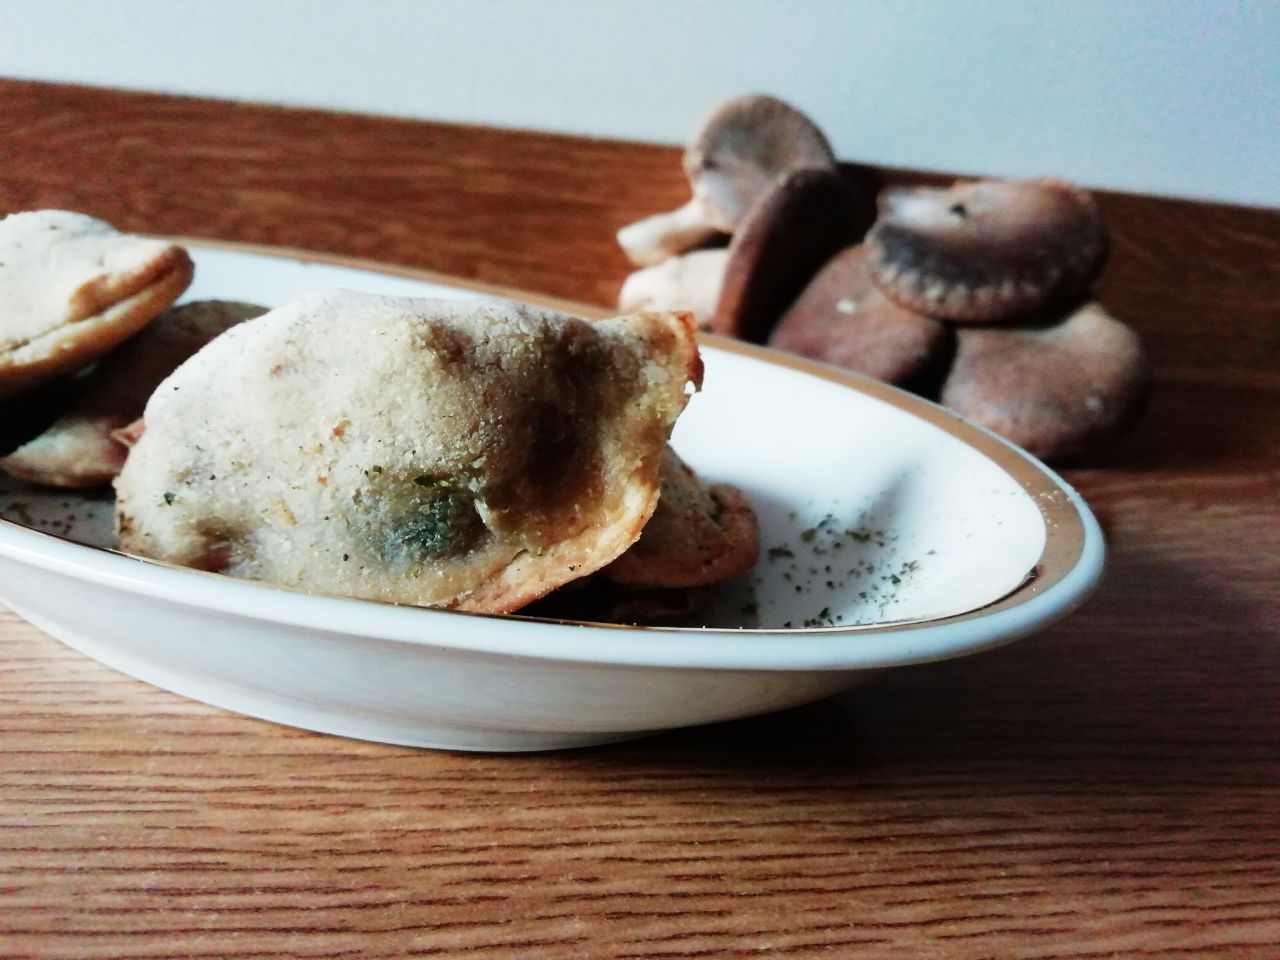 Finger food autunnali senza uova senza burro e senza formaggio: mezzelune ai funghi champignon!